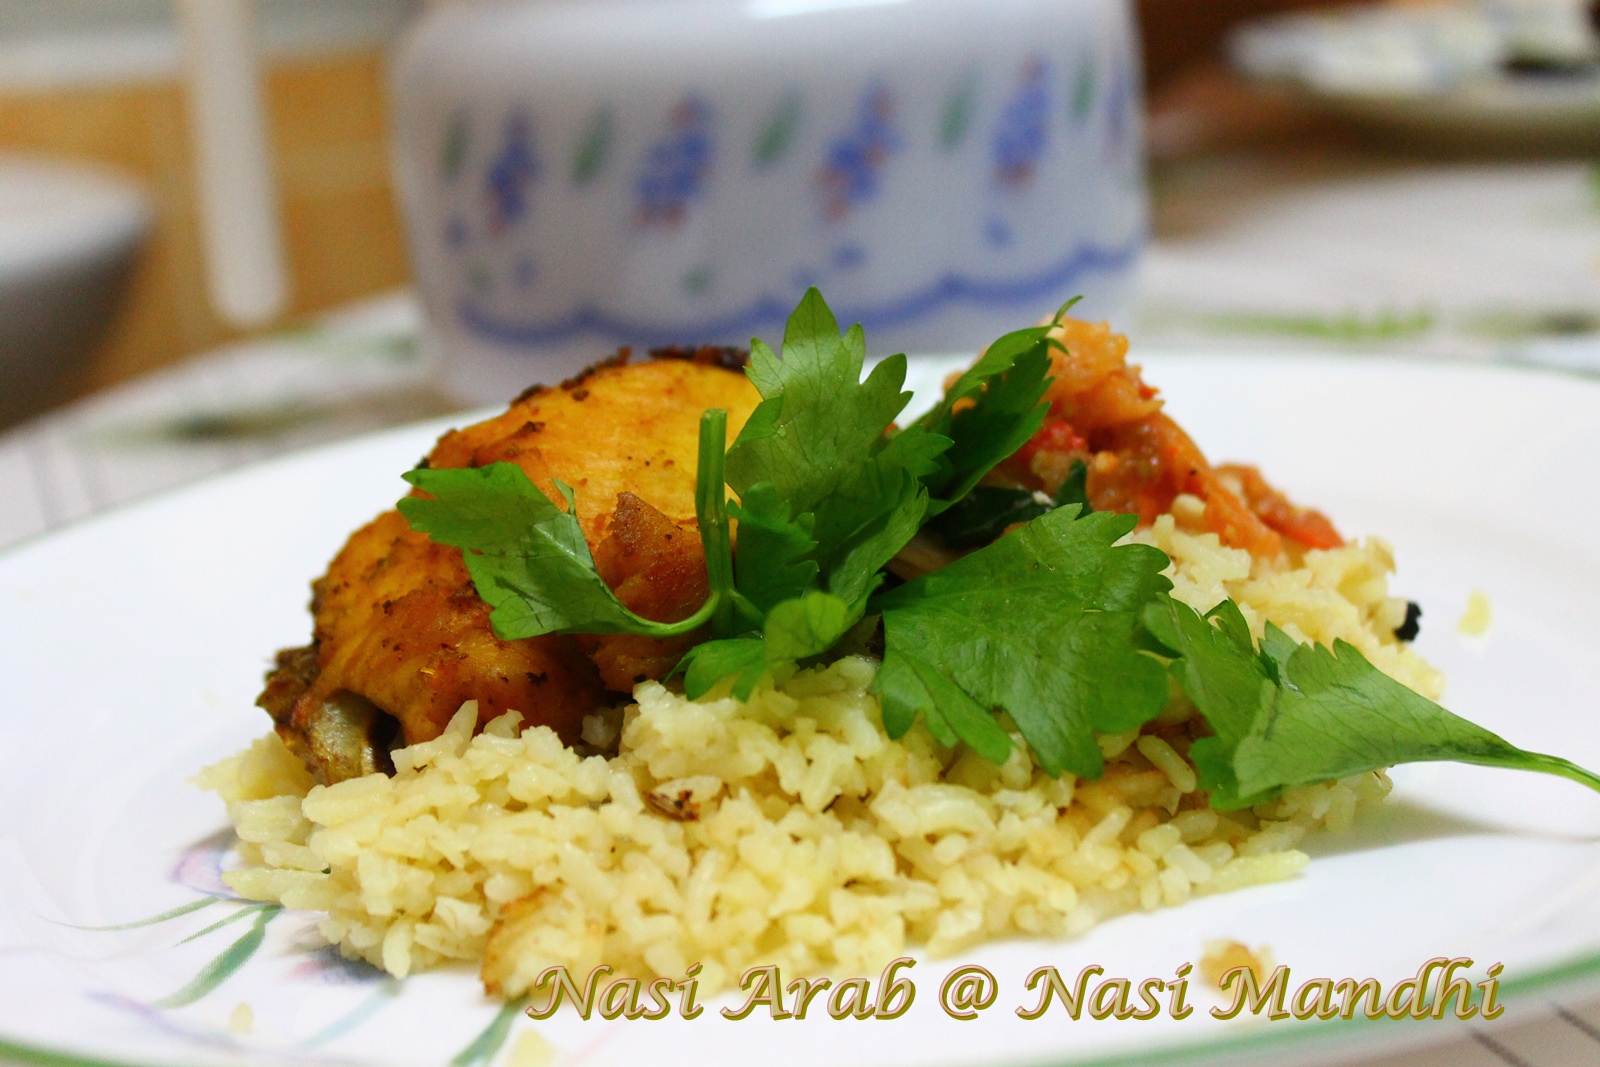 Catatan harian dunia masakan: Nasi Arab @ Nasi Mandhi